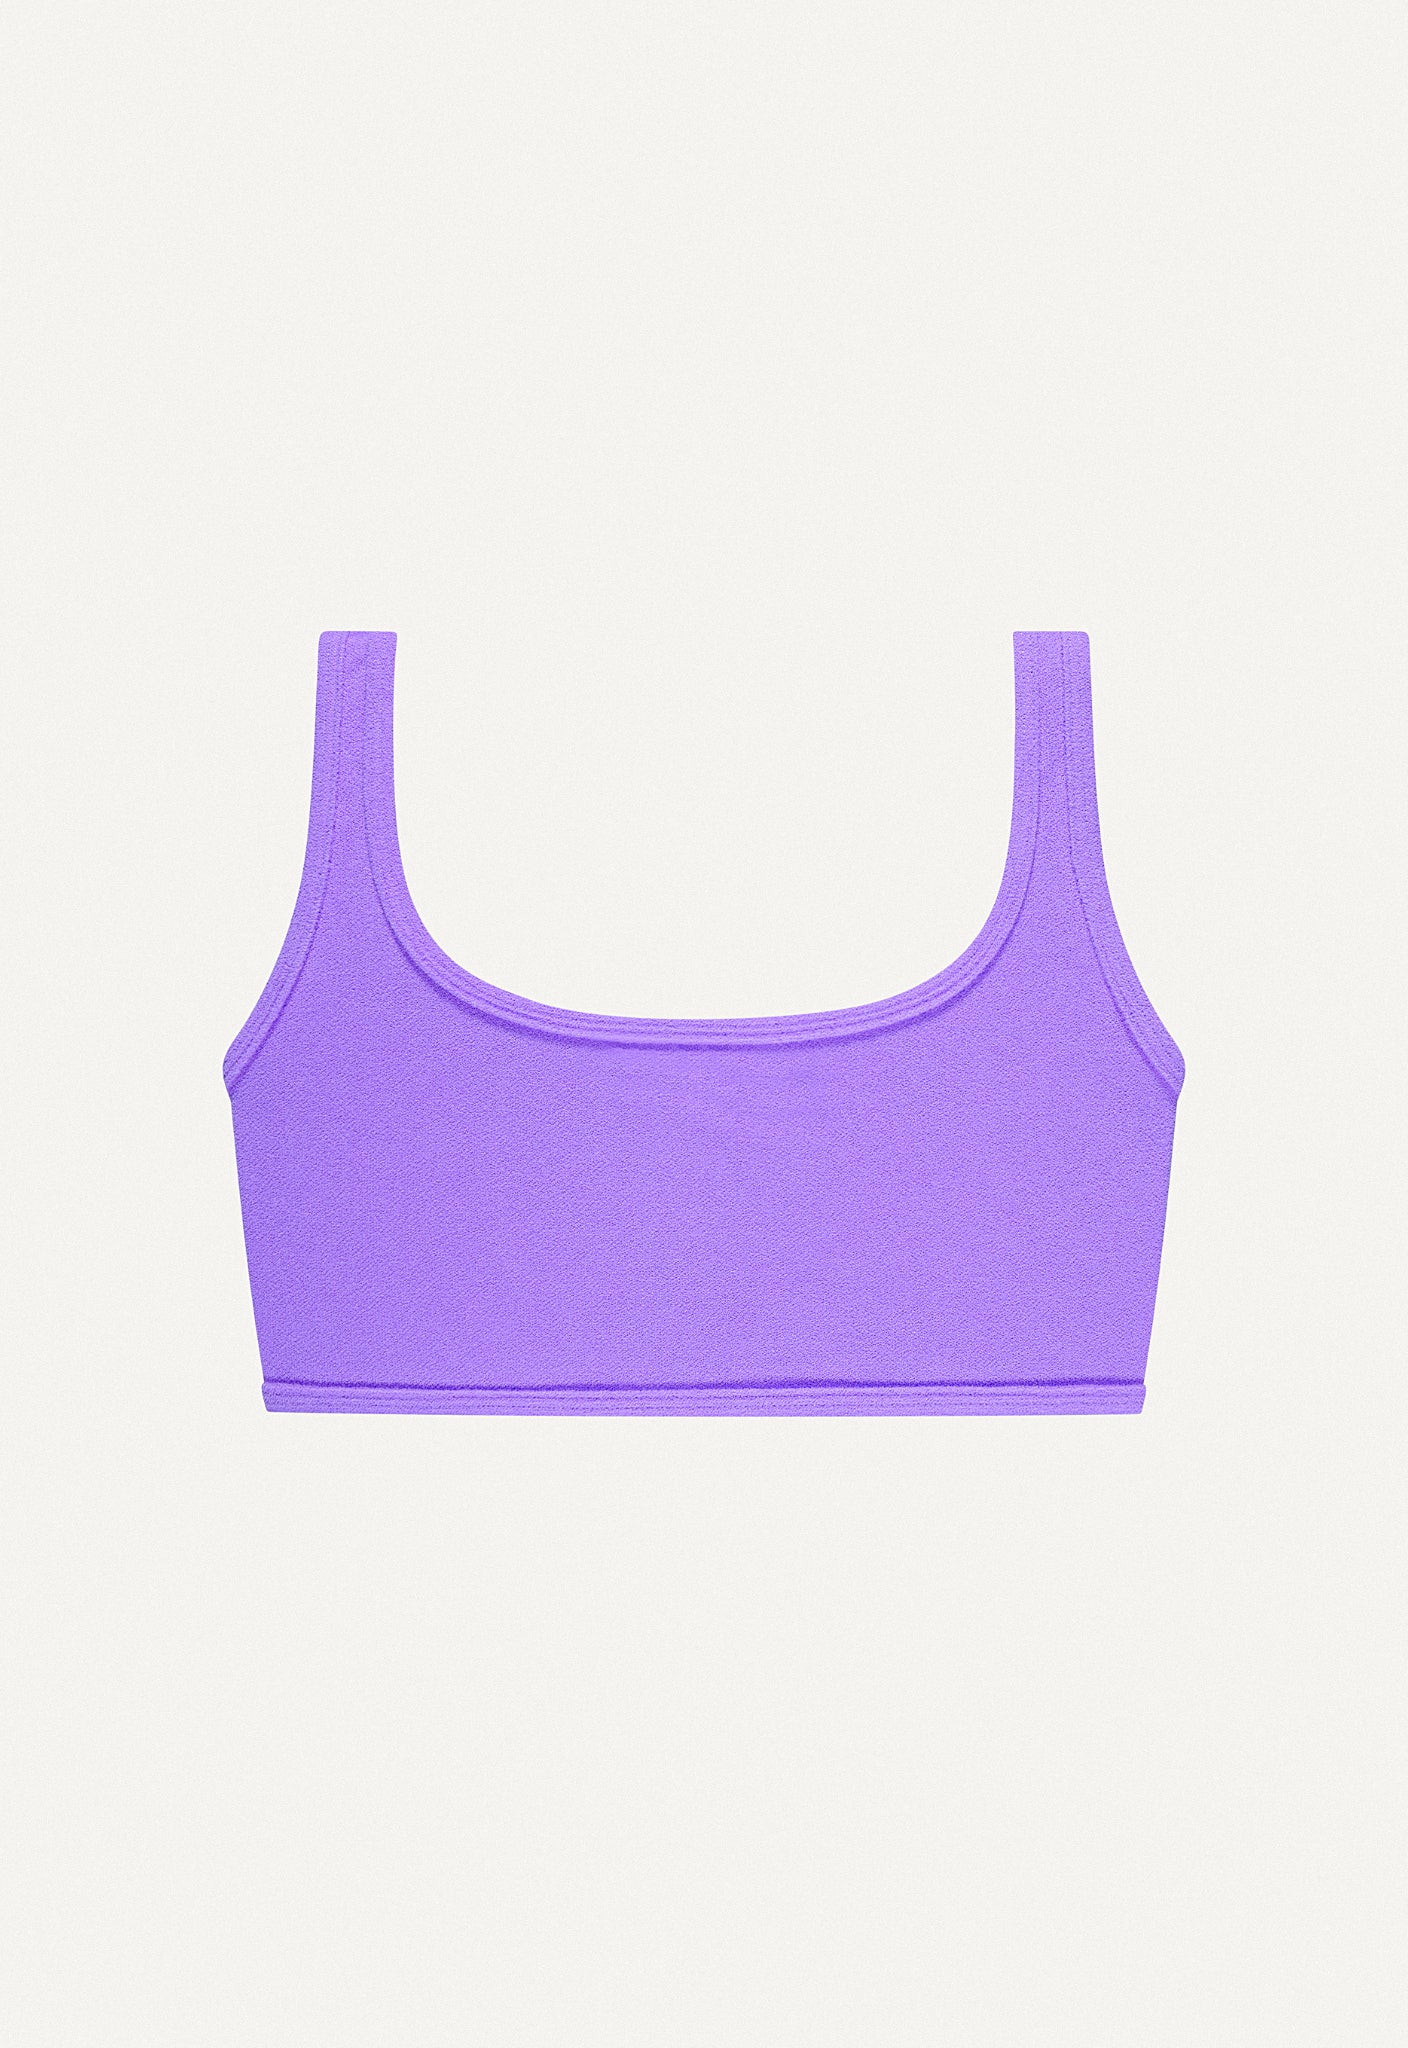 Bikini Top “Vento” in lilac terry